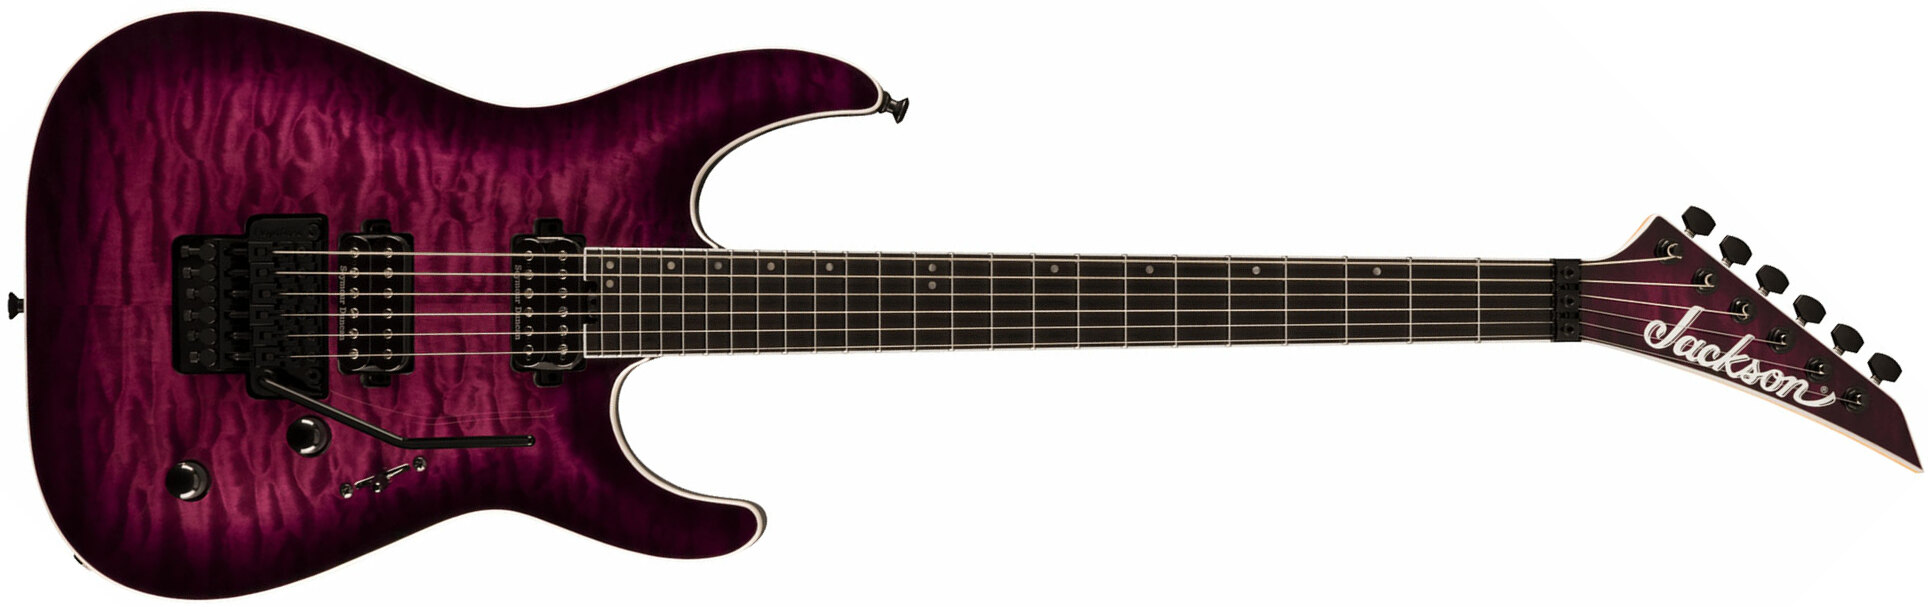 Jackson Dinky Dkaq Pro Plus 2h Seymour Duncan Fr Eb - Transparent Purple Burst - Guitarra eléctrica con forma de str. - Main picture